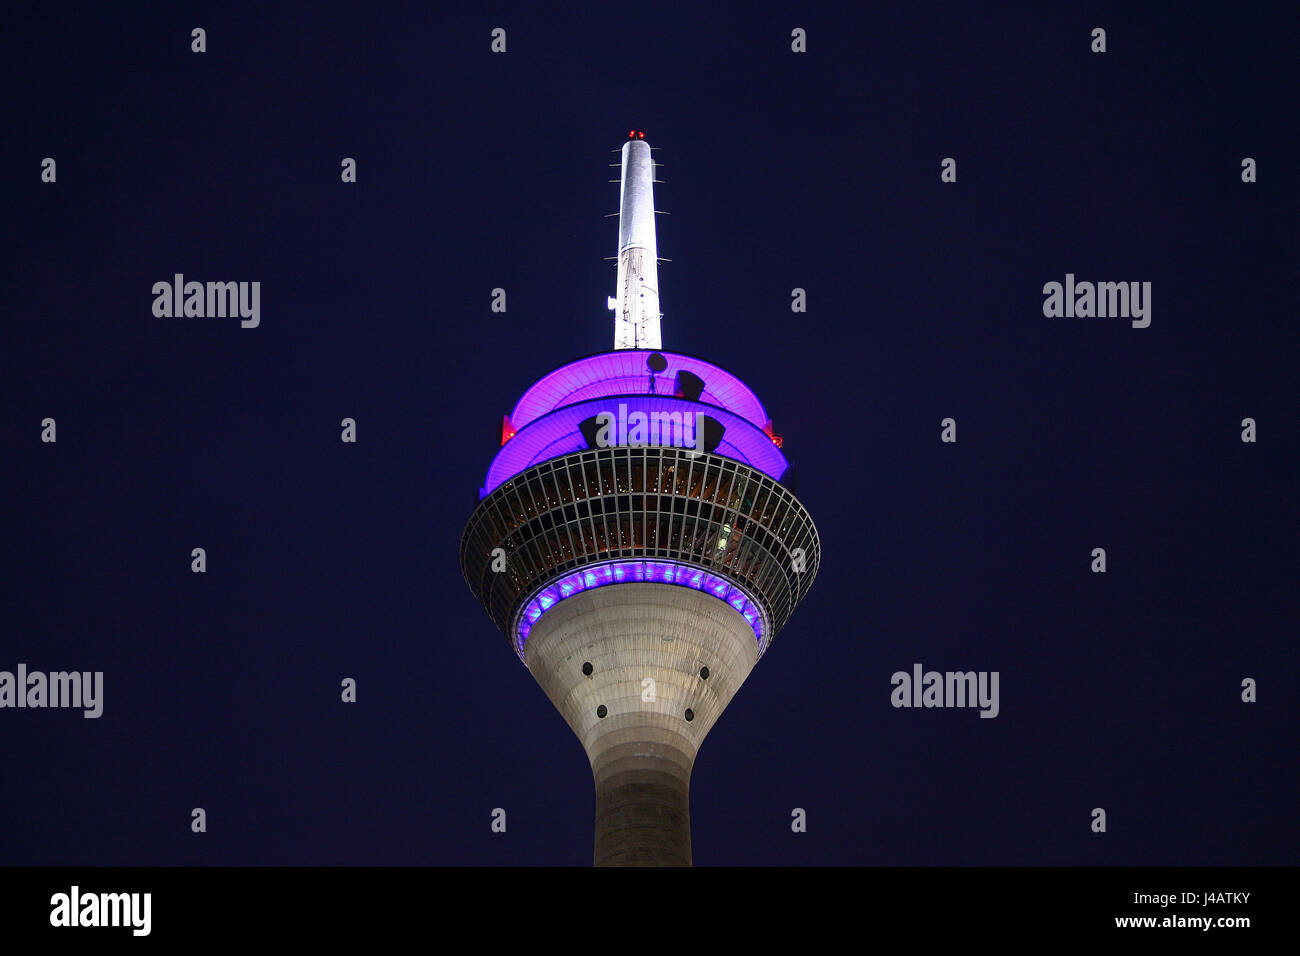 Le restaurant Blue Tower rhin nuit nuit nuit photographie télévision violet Banque D'Images